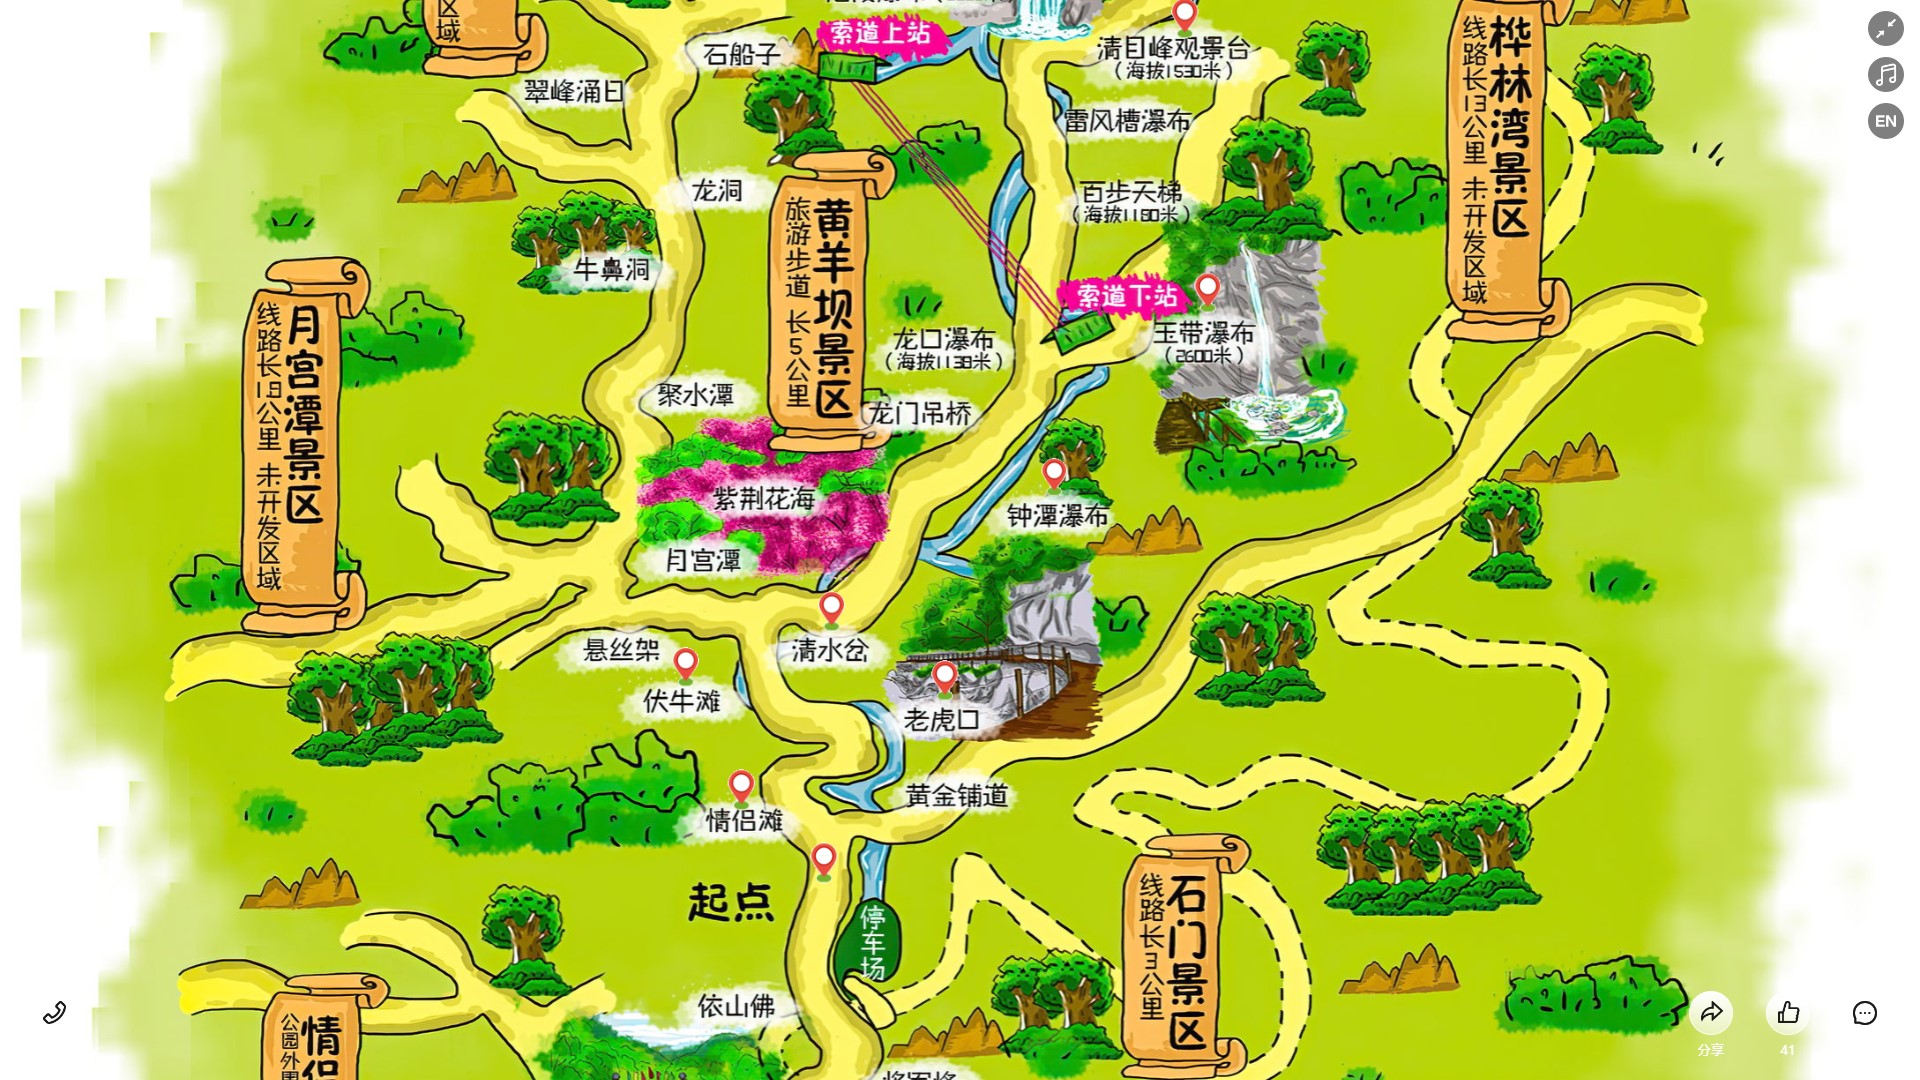 藤县景区导览系统